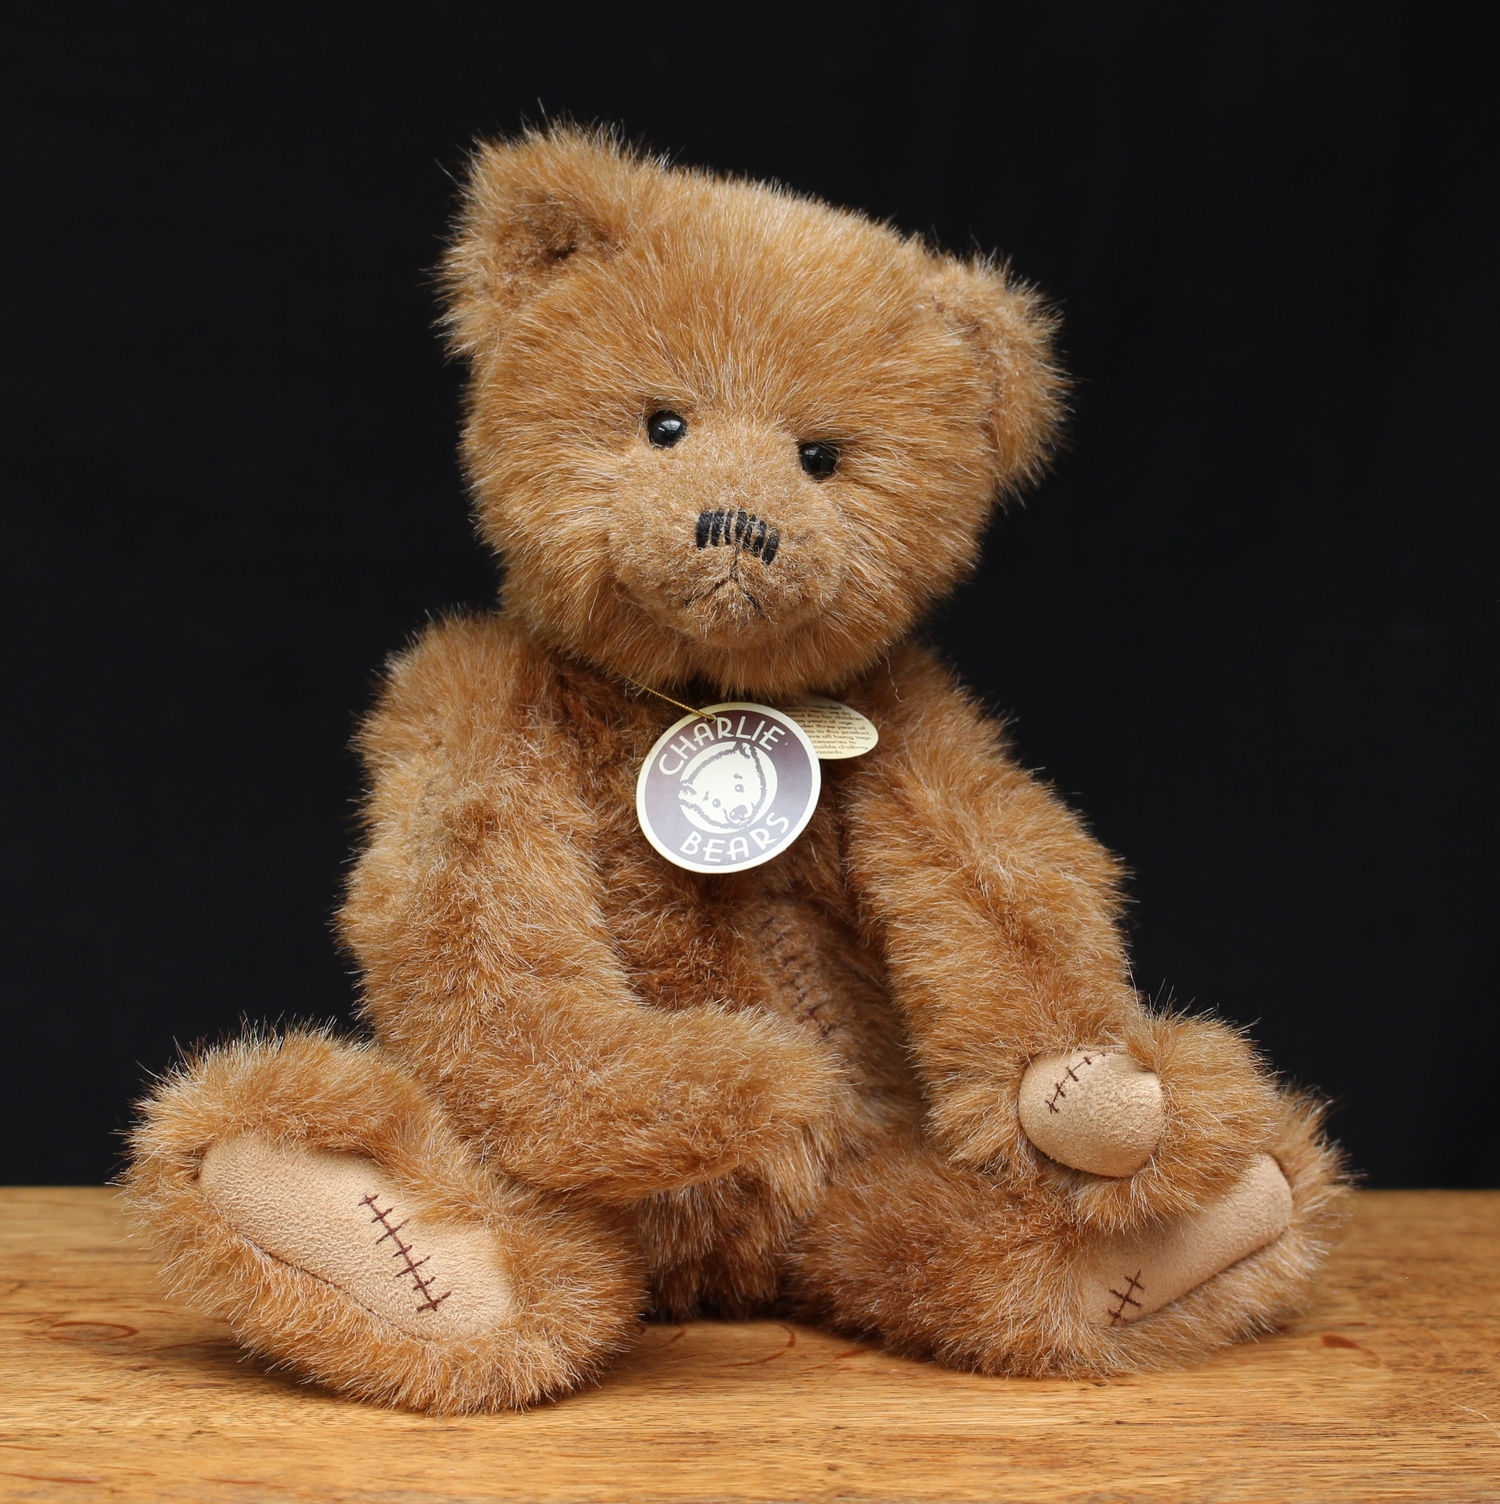 Charlie Bears CB06031 Beau teddy bear, from the 2006 Charlie Bears Plush Collection, 35.5cm high